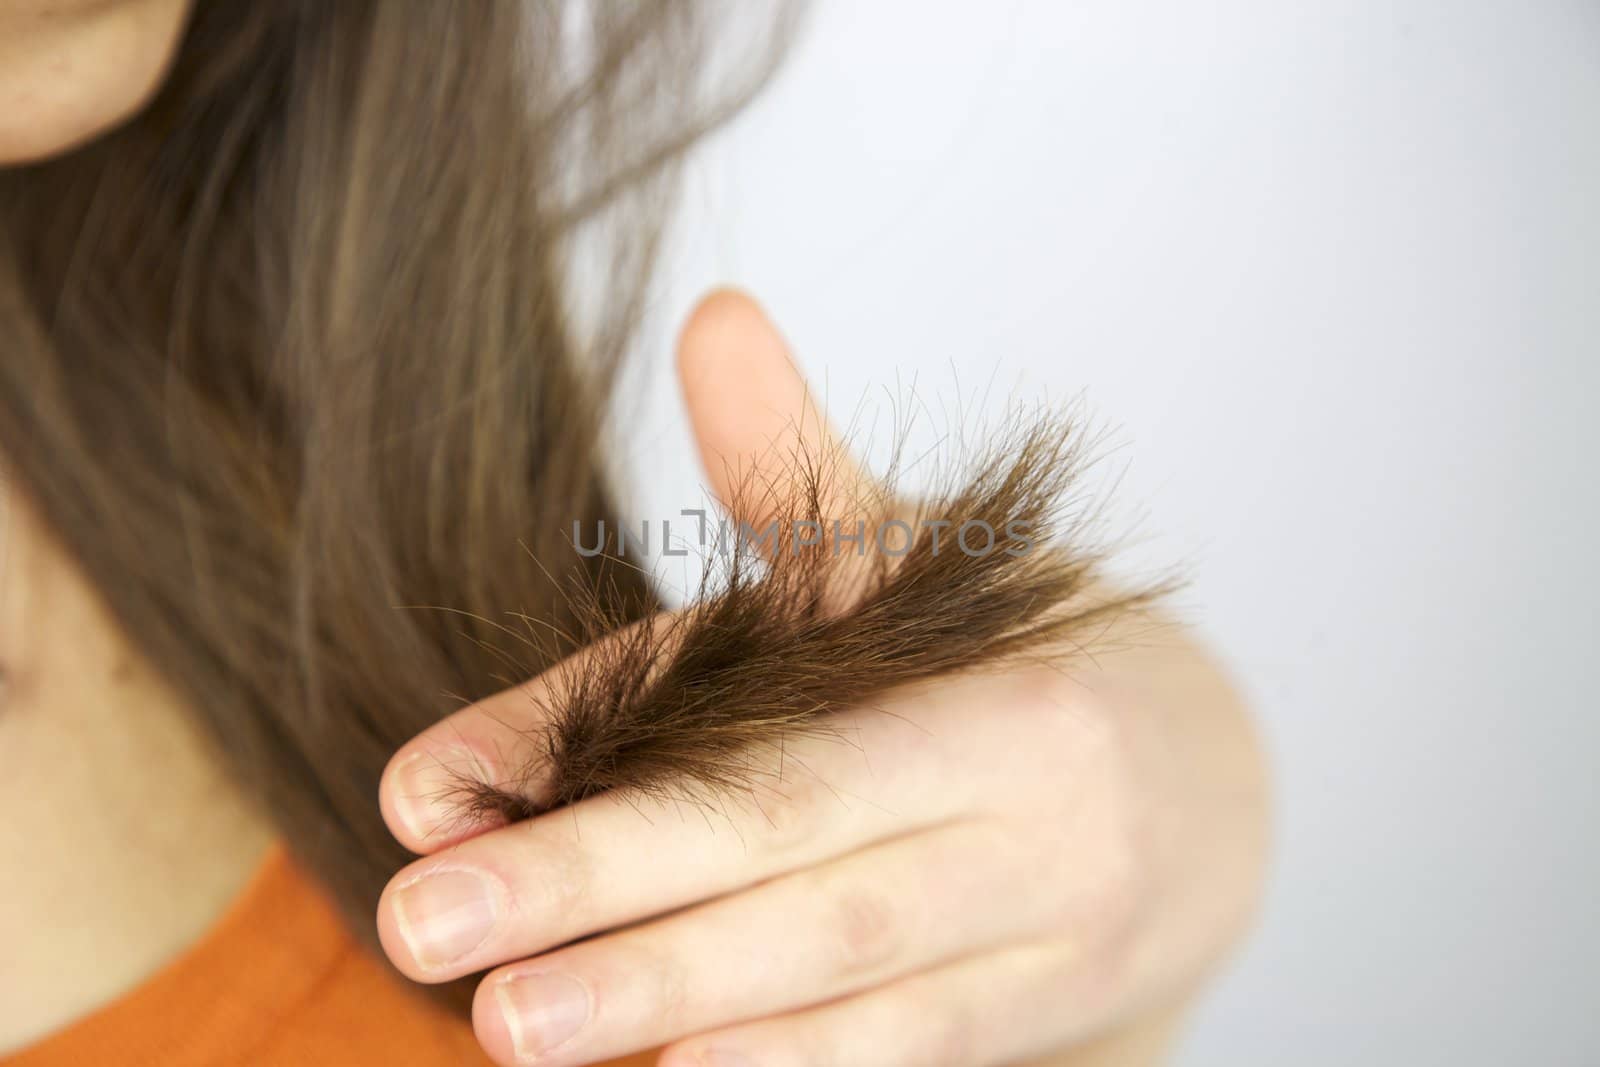 Split ends hair of brunette female model holding hand